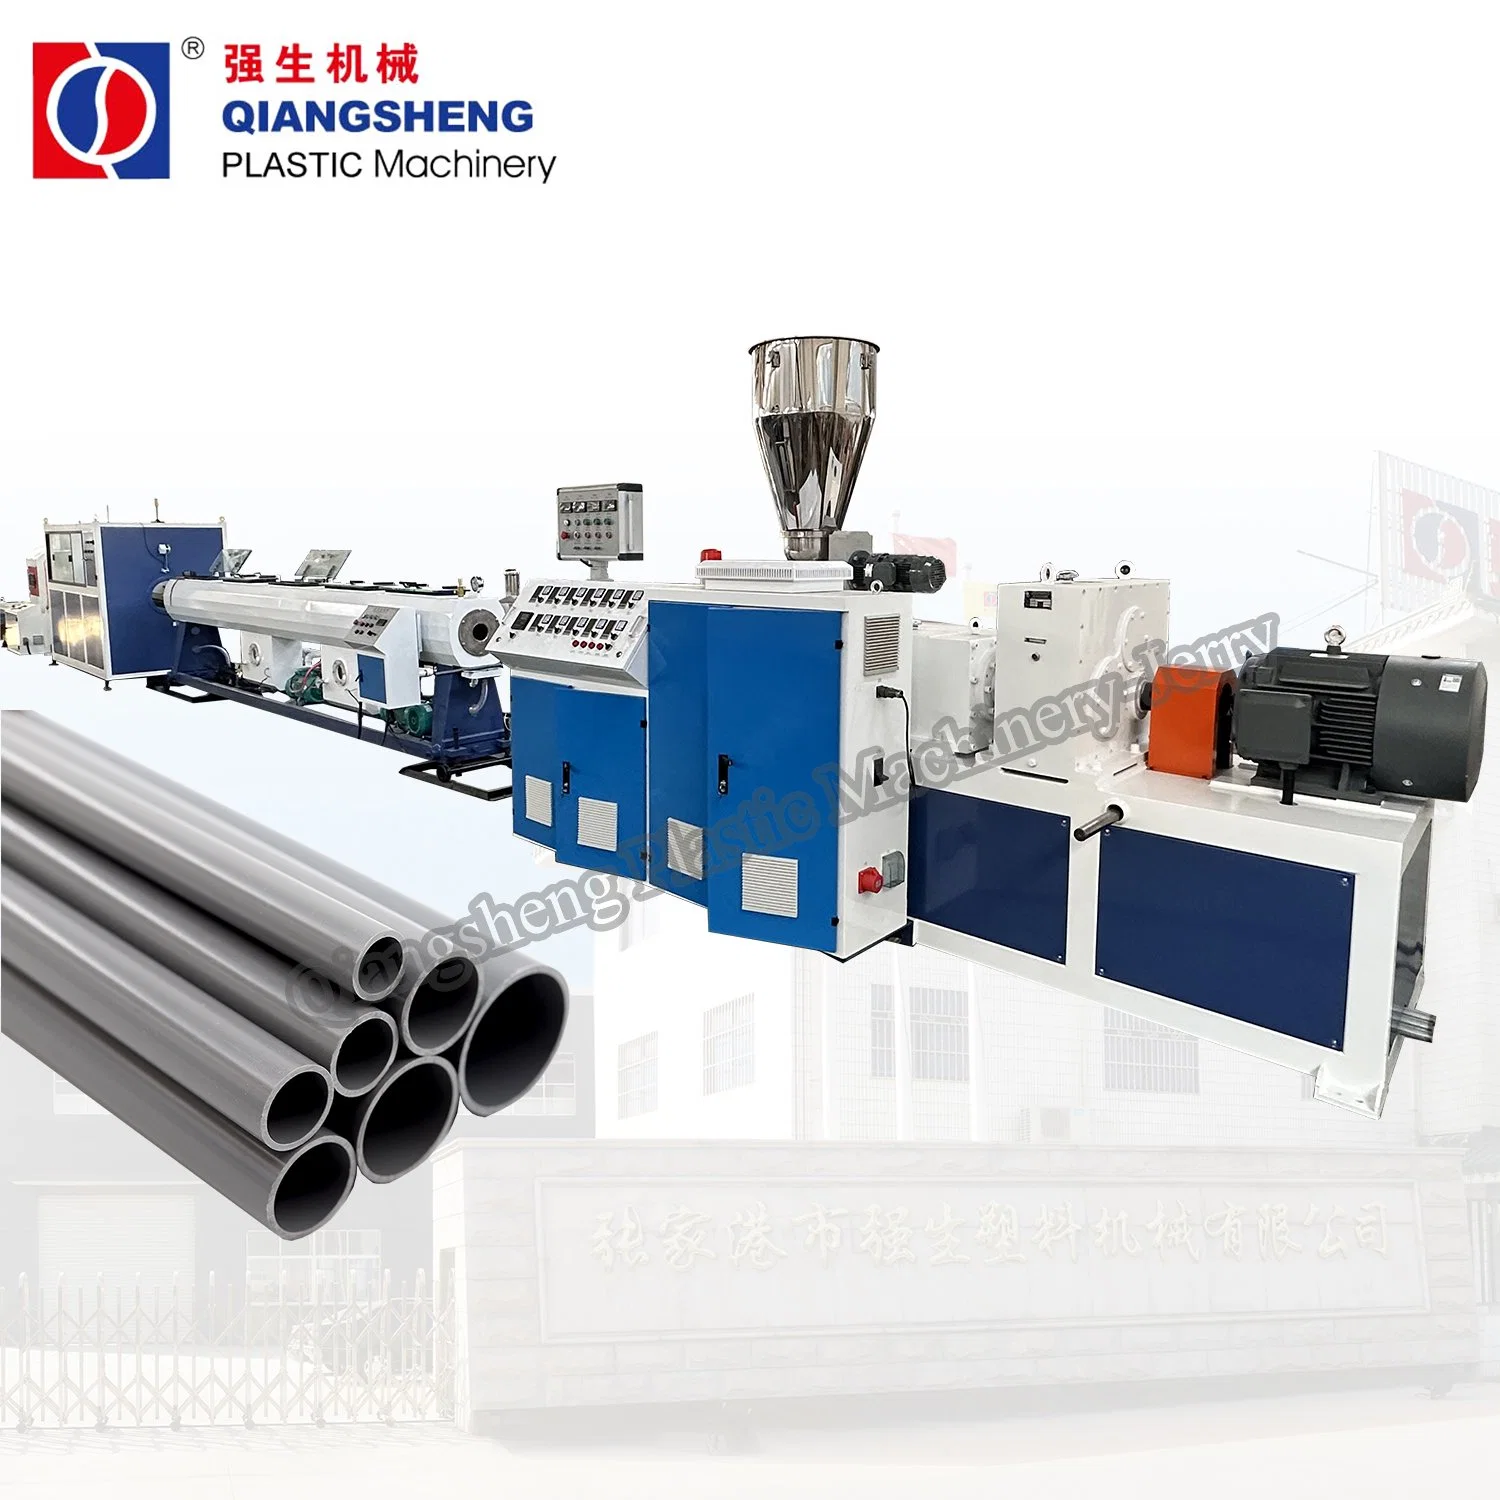 Günstige Preis UPVC PVC PVC Rohr Herstellung Herstellung Maschine Extrusion Produktion Linie